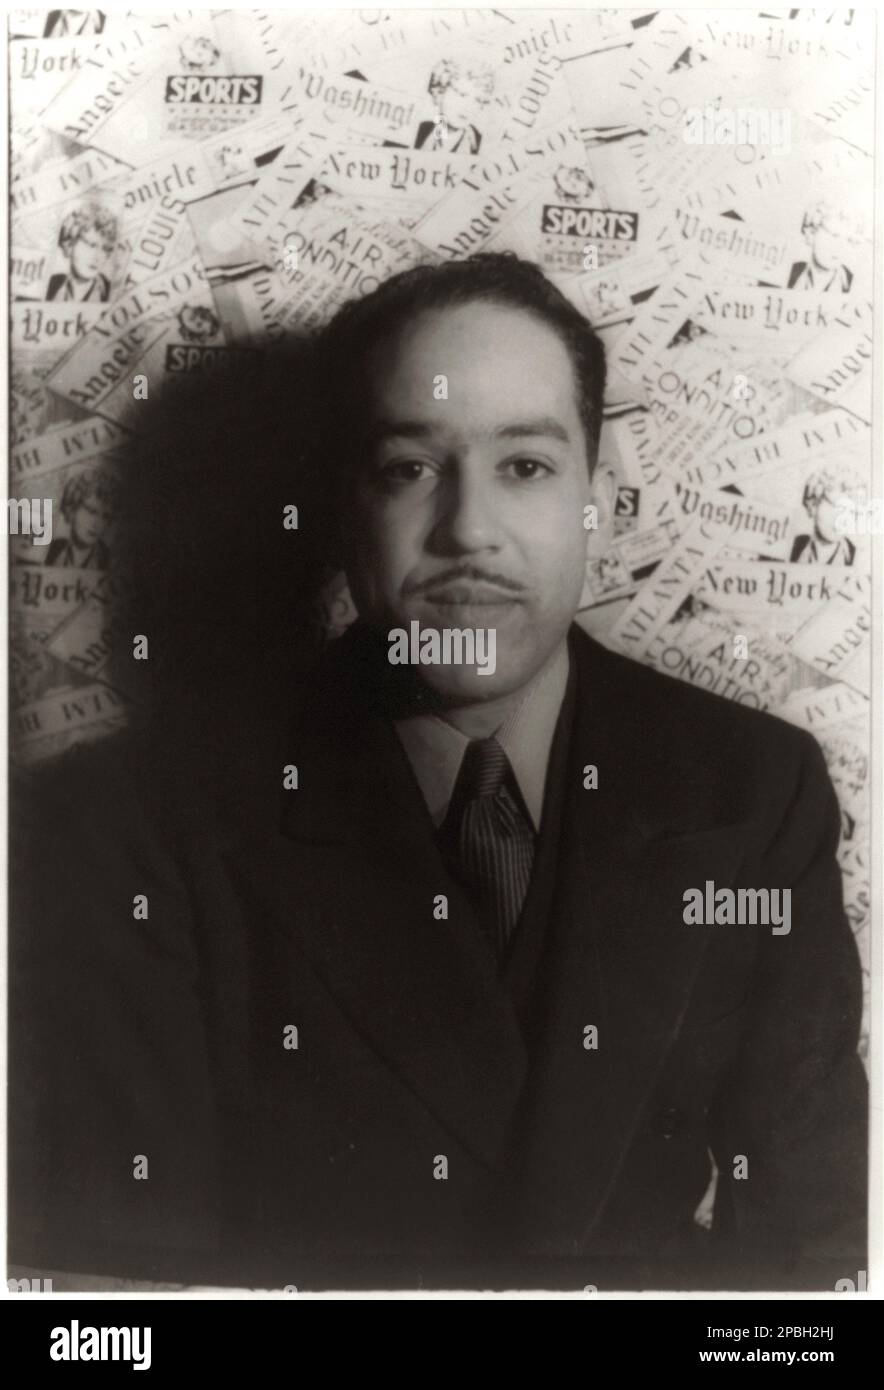 1936 , New York , Etats-Unis ; le poète américain noir LANGSTON HUGHES (Joplin, Missouri 1902 – 1967 ) . Photo de CARL VAN VECHTEN ( 1880 - 1964 ) . POETA - POÉSIE - POÉSIE - LETTERATURA - LITTÉRATURE - letterato - GAY - homosexuel - Homosexualité - omosessualità - LGBT - GLTB - Omosessuale - portrait - ritratto - maledetto - maudit - bohemien - bachili - HARLEM RENAISSANCE - poésie américaine moderne ---- NE PAS FAIRE DE PUBLICITÉ PUBBLICITARY UTILISATION --- NON PAR USO PUBBLICITARIO ----- Archivio GBB Banque D'Images